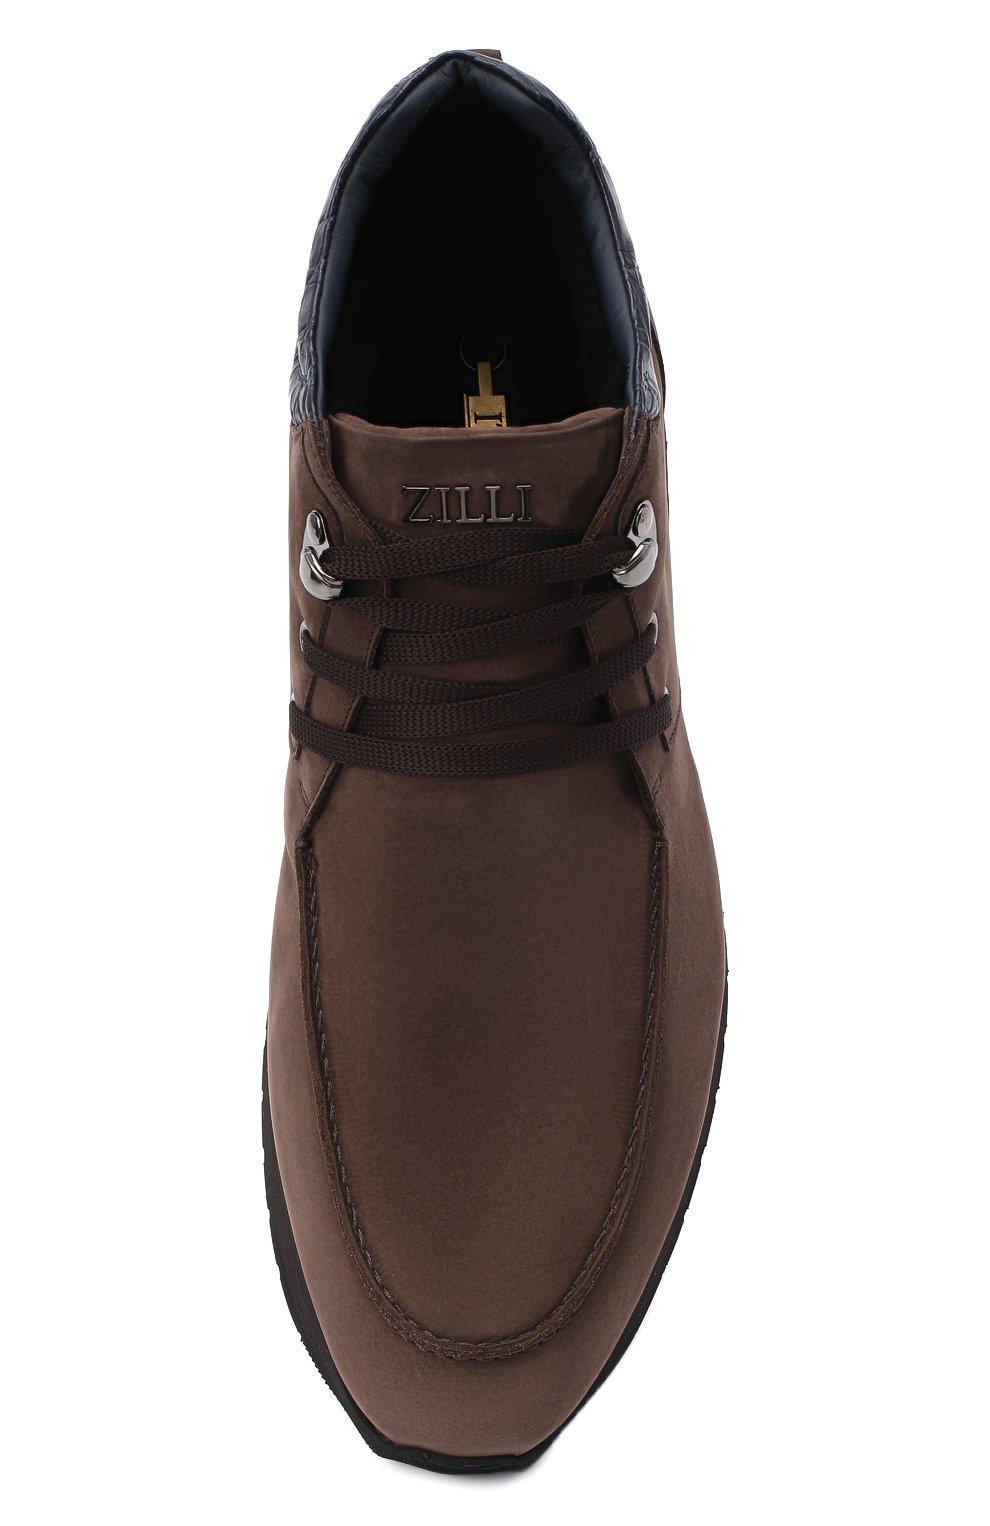 Мужские коричневые ботинки с отделкой из кожи каймана ZILLI купить винтернет-магазине ЦУМ, арт. MDU-T127/005/CCR0